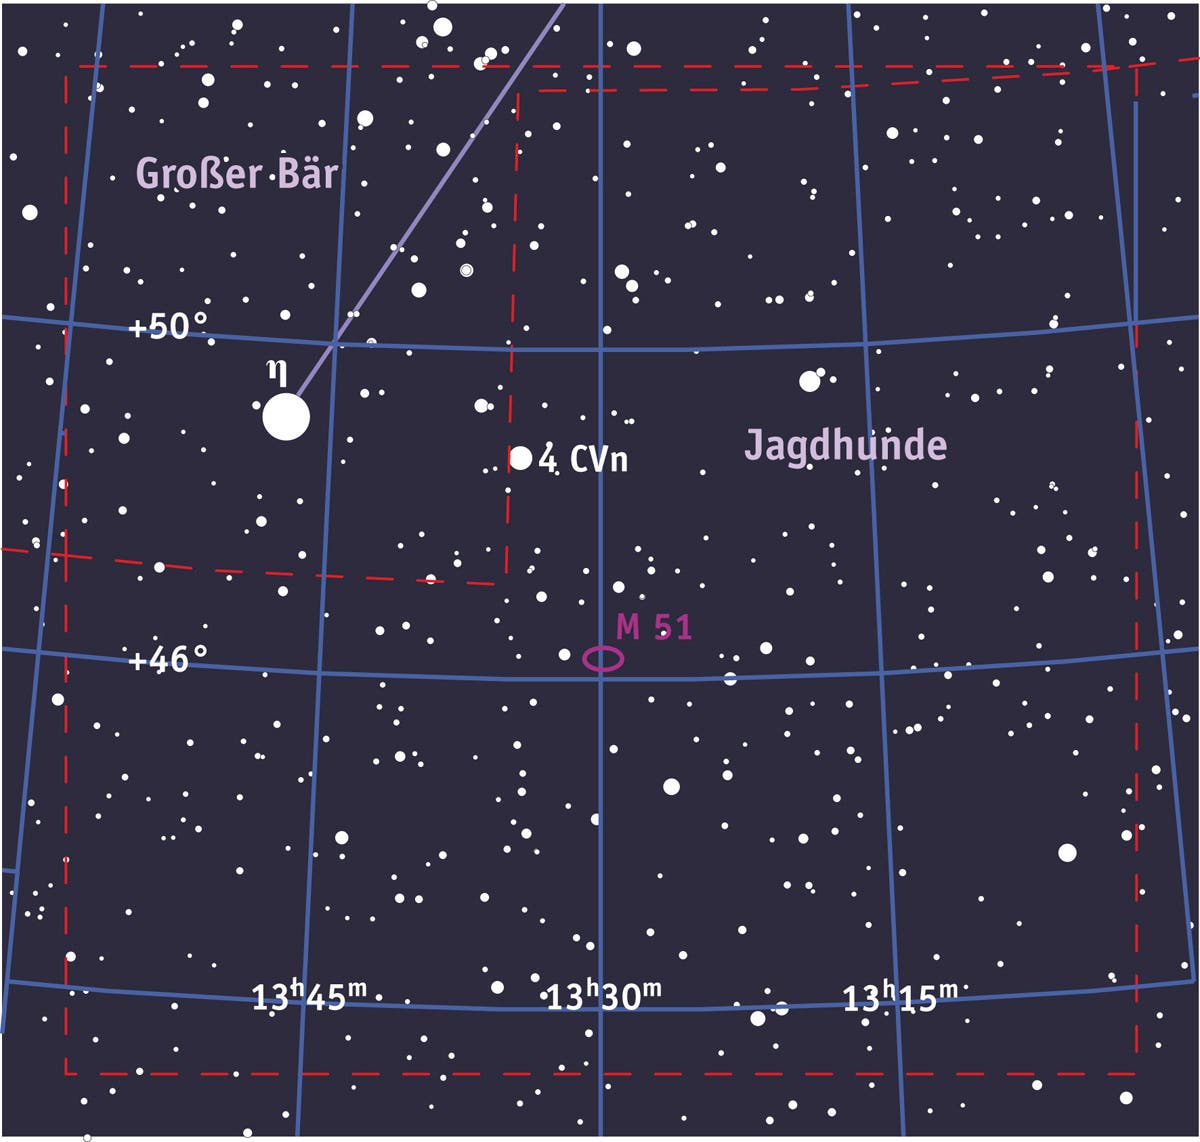 Aufsuchkarte für Messier 51 im Sternbild Jagdhunde